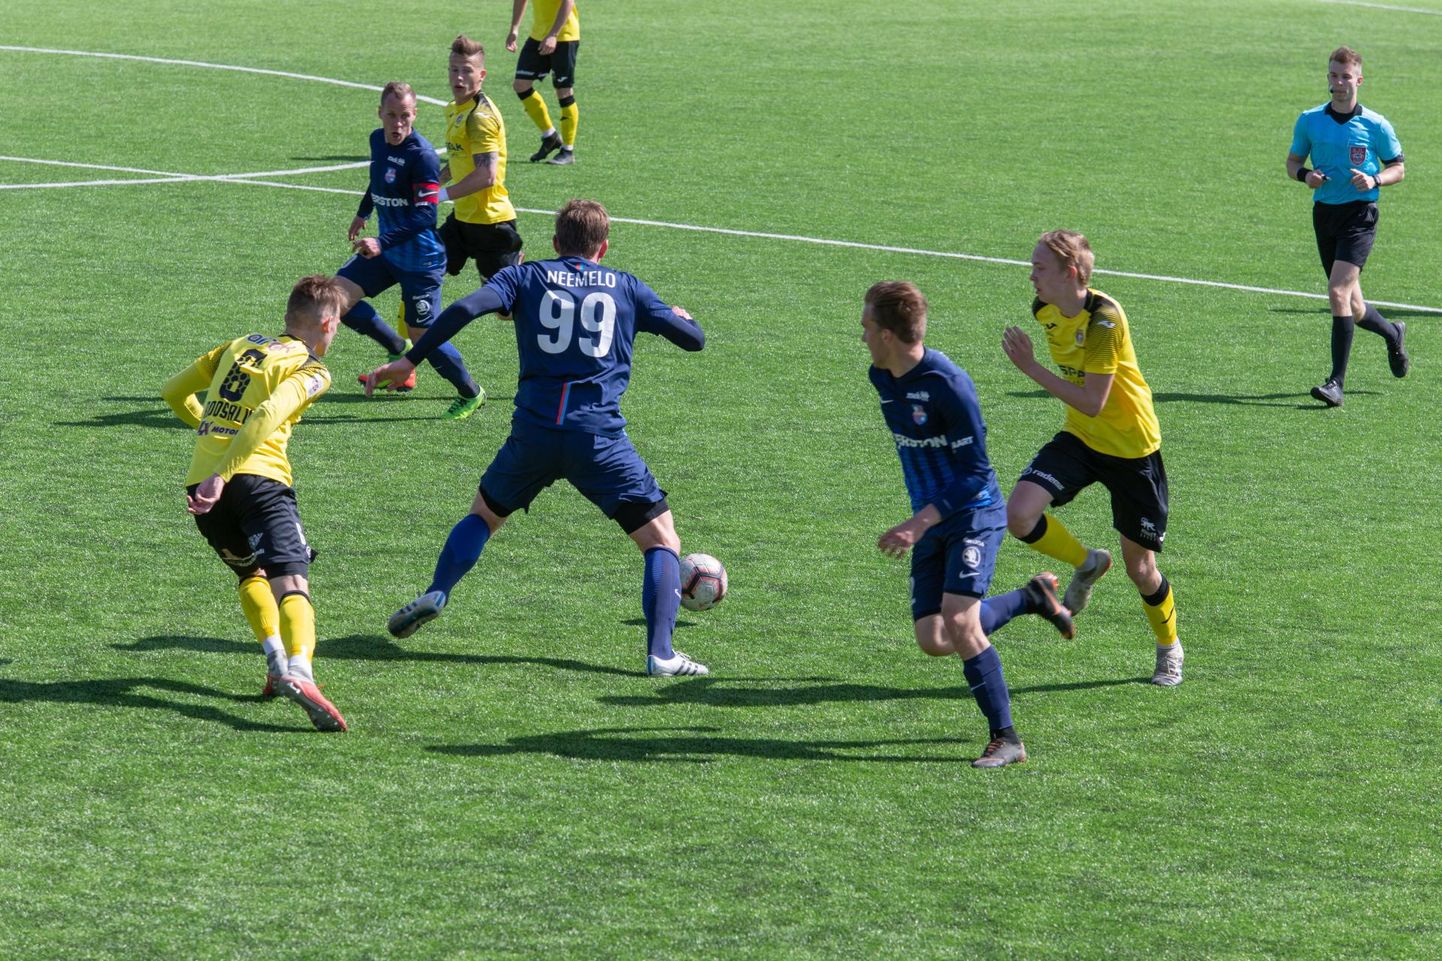 Premium-liiga jalgpallis kohtusid Viljandi Tulevik ja Paide Linnameeskond.